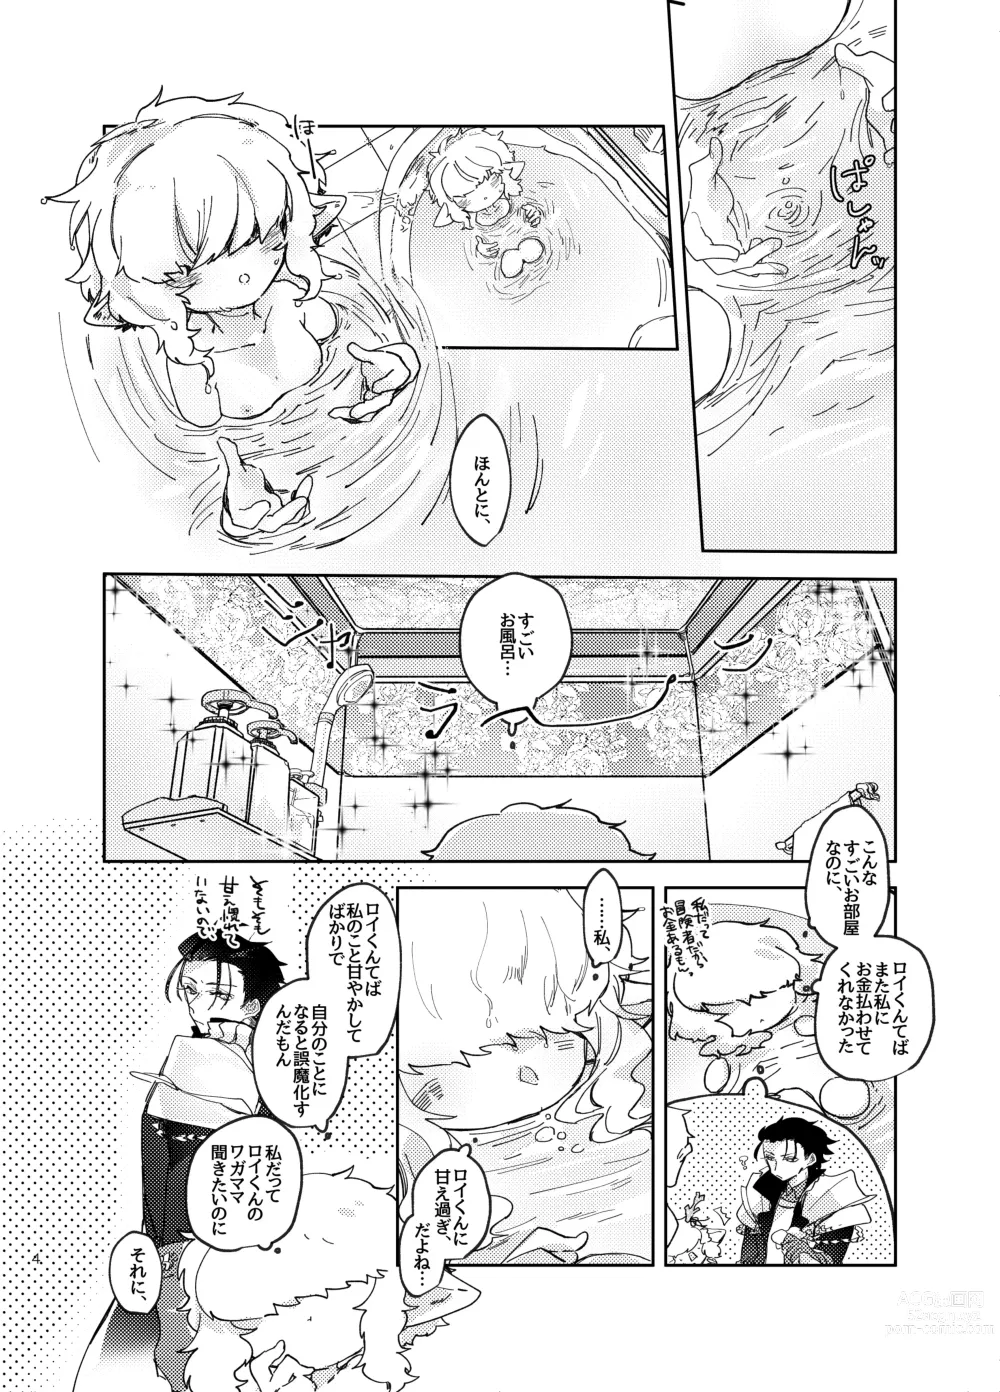 Page 4 of doujinshi Suki ni Natte ne